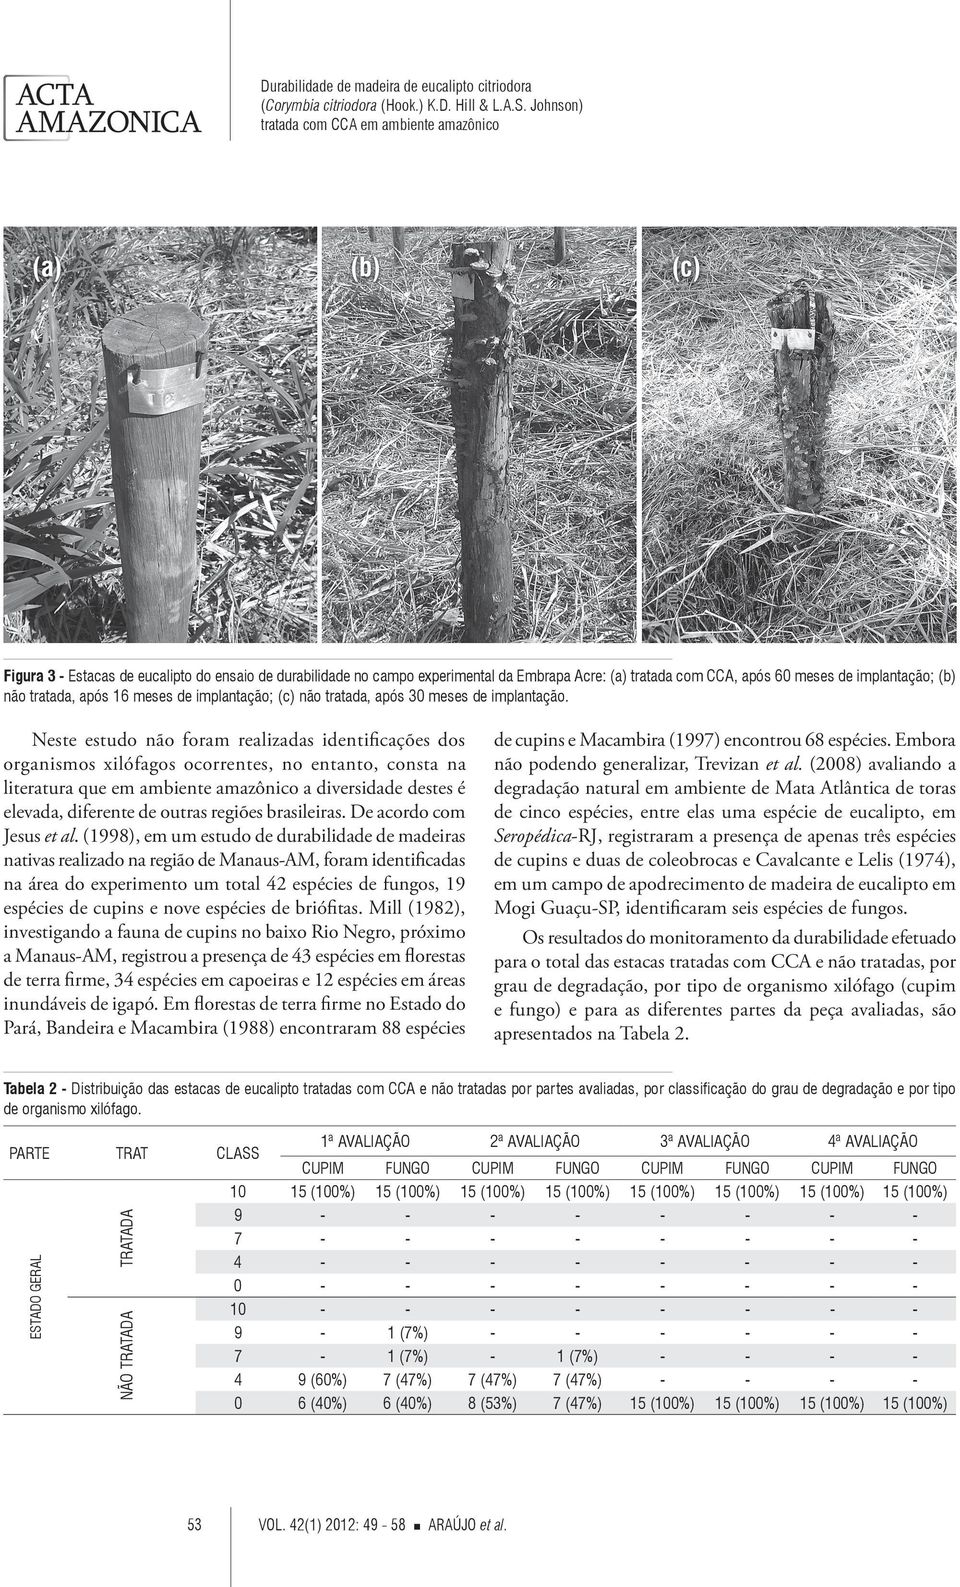 Neste estudo não foram realizadas identificações dos organismos xilófagos ocorrentes, no entanto, consta na literatura que em ambiente amazônico a diversidade destes é elevada, diferente de outras